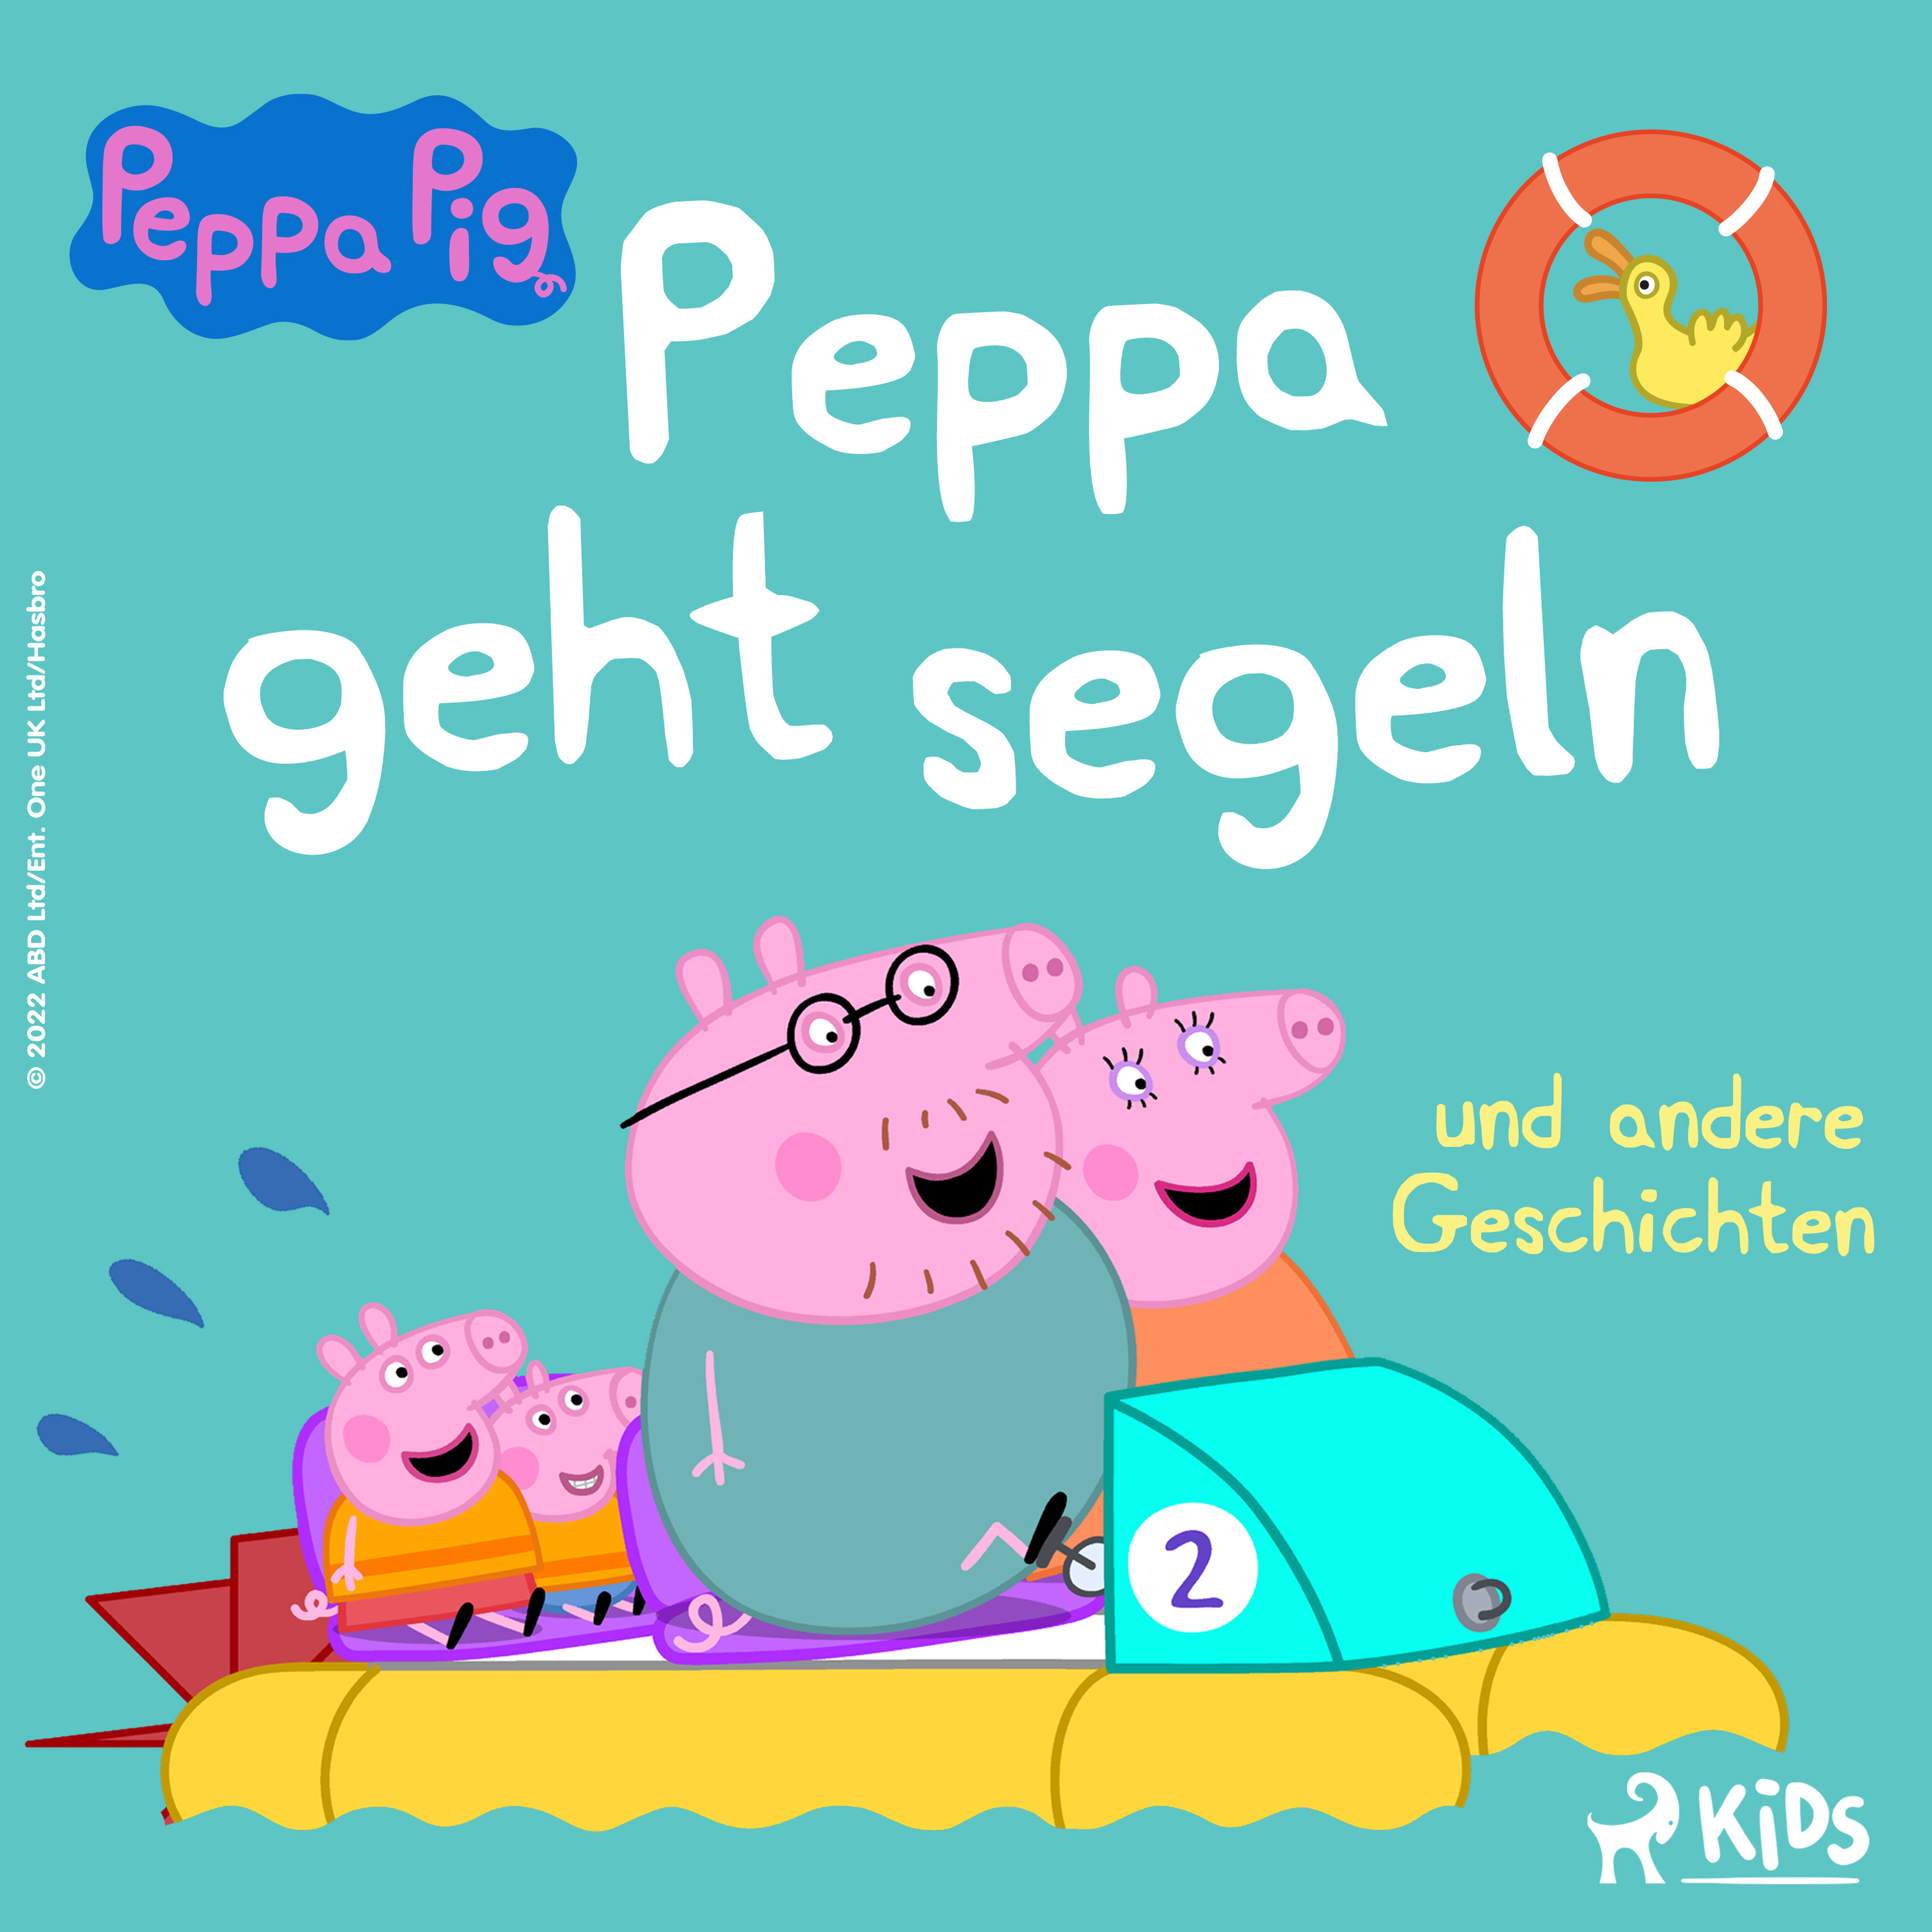 Peppa Wutz - 5 - Peppa Wutz - Peppa geht segeln und andere Geschichten  Hörbuch Download